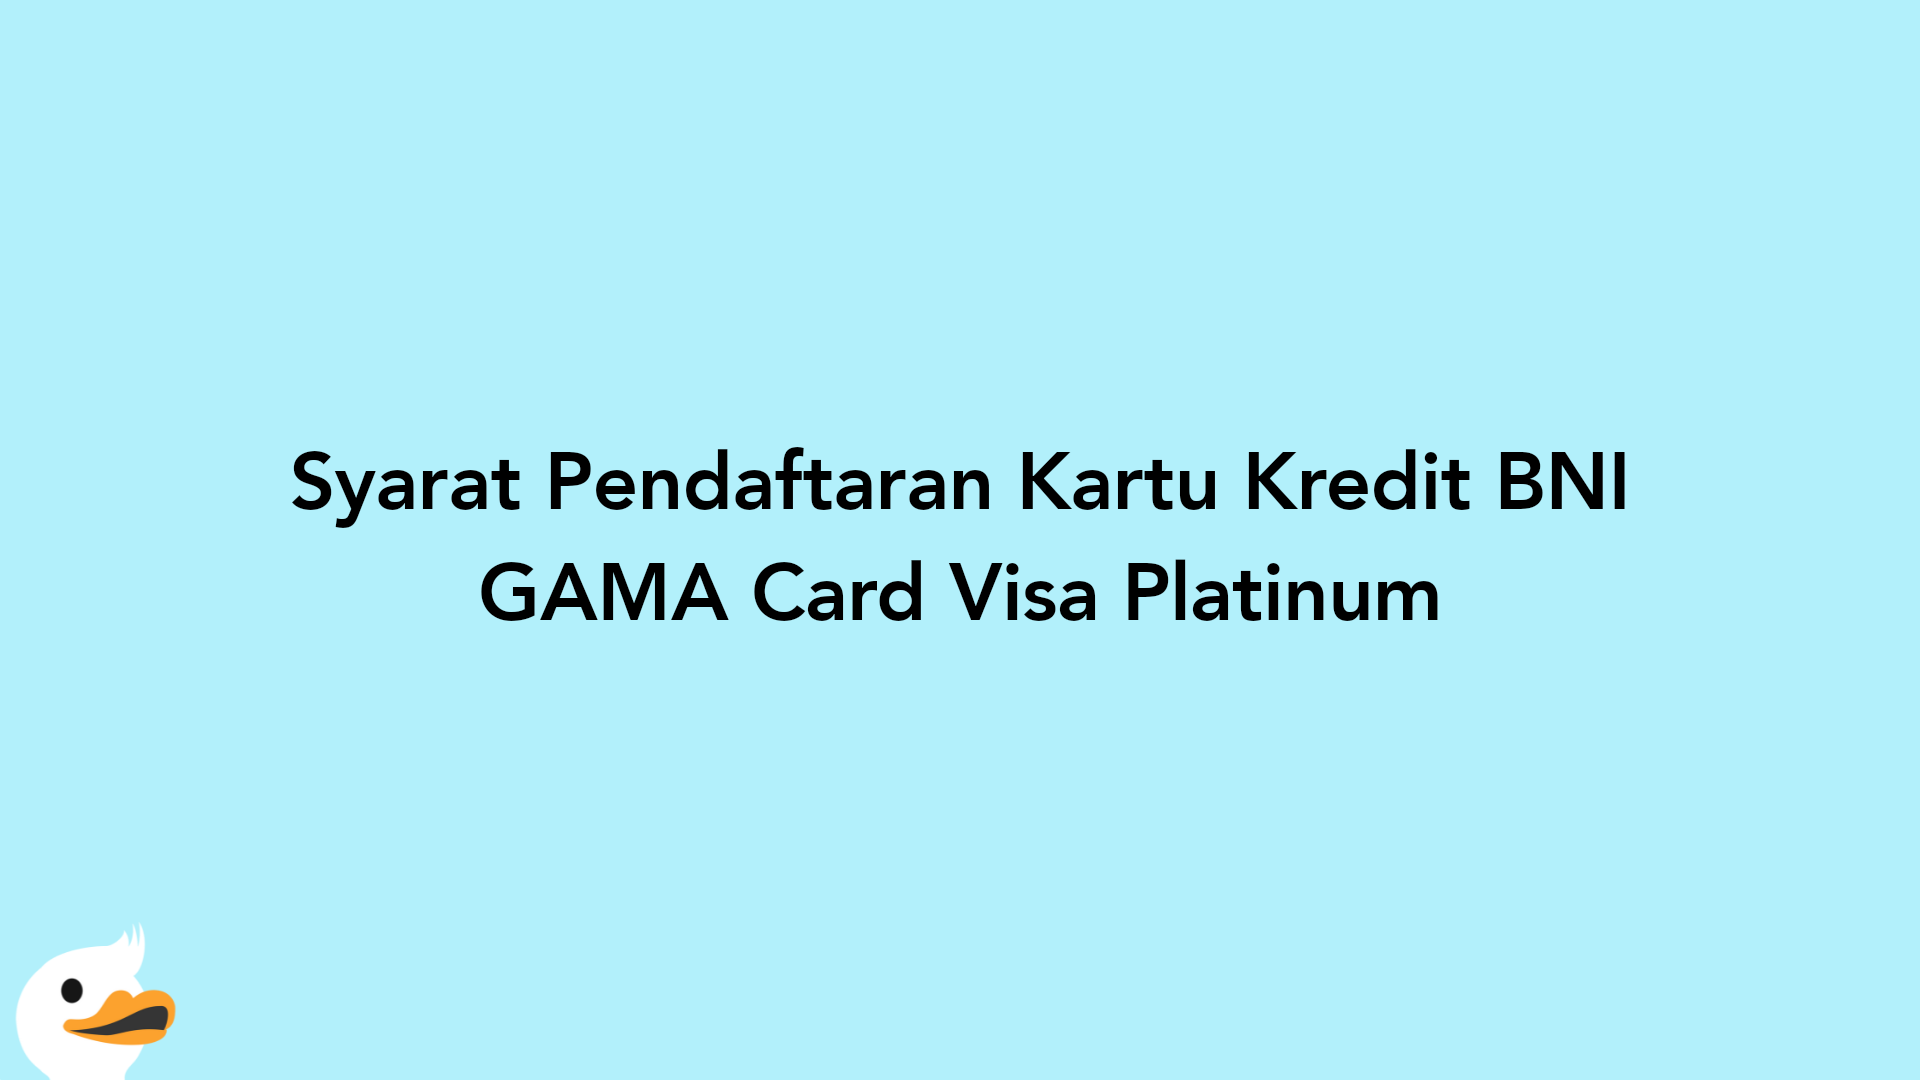 Syarat Pendaftaran Kartu Kredit BNI GAMA Card Visa Platinum